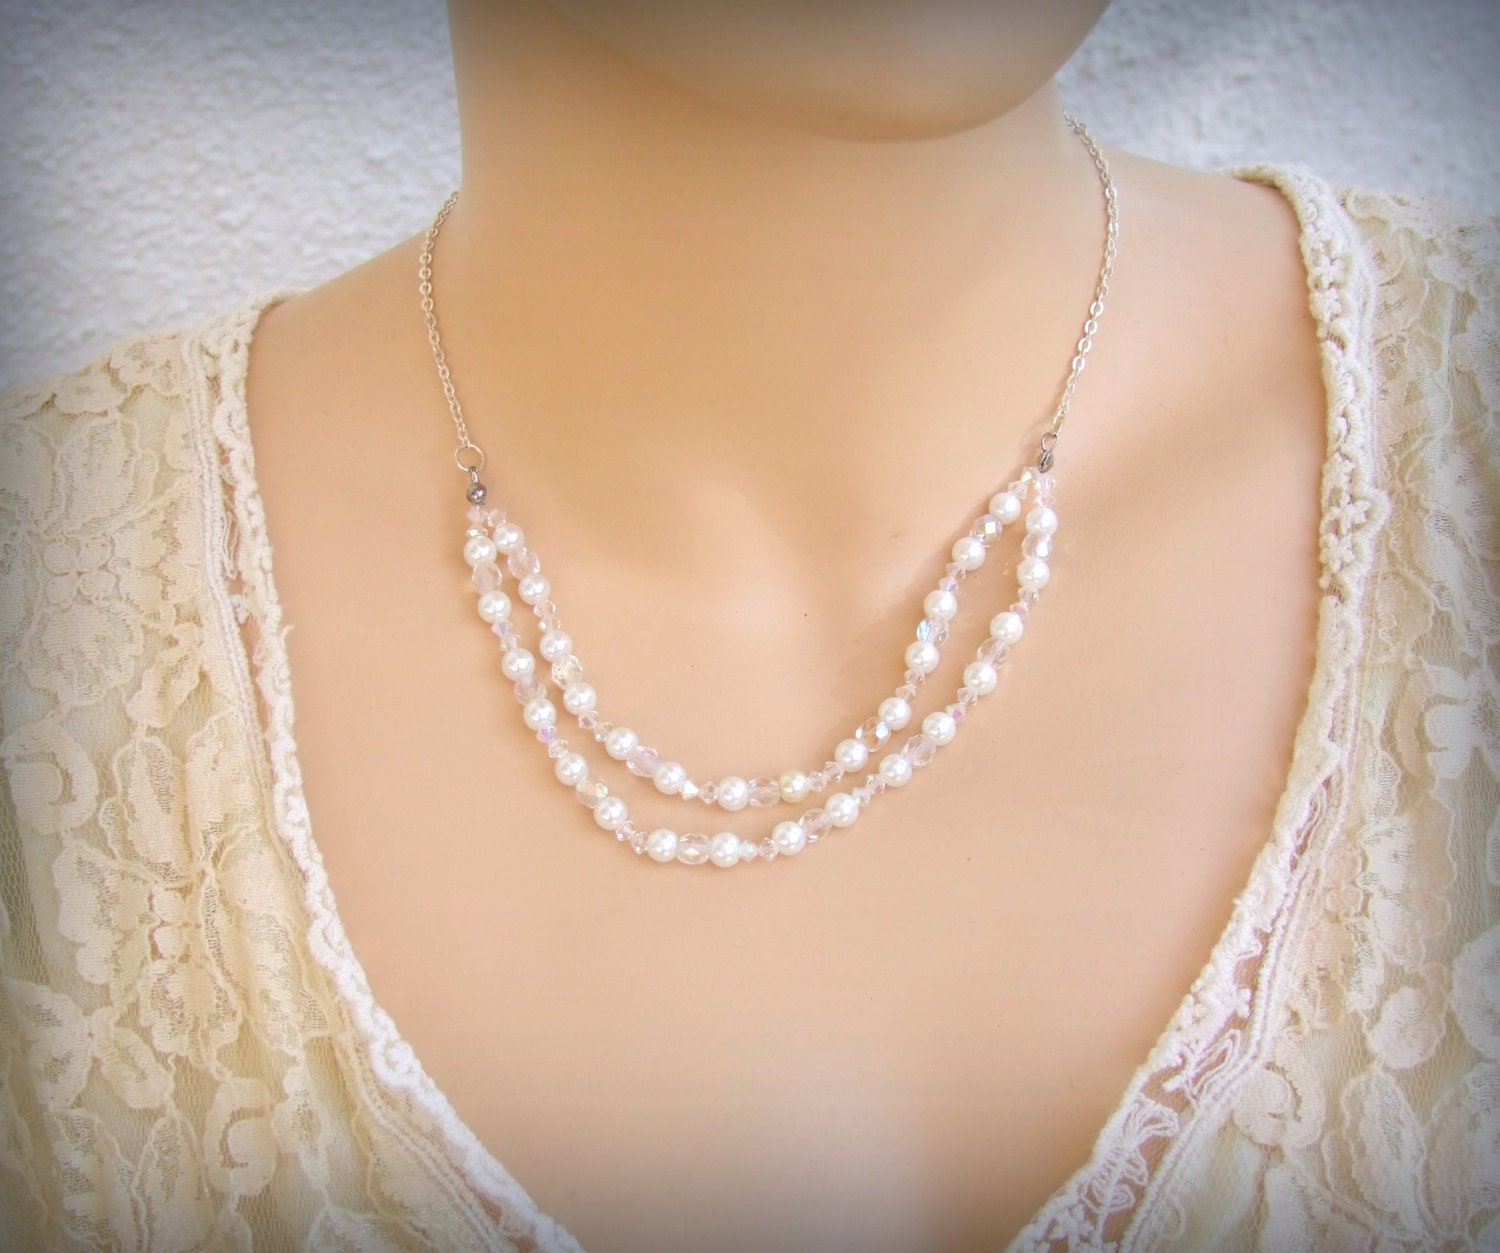 20 OFFWedding Pearl Necklace, Bridal Necklace, Crystal